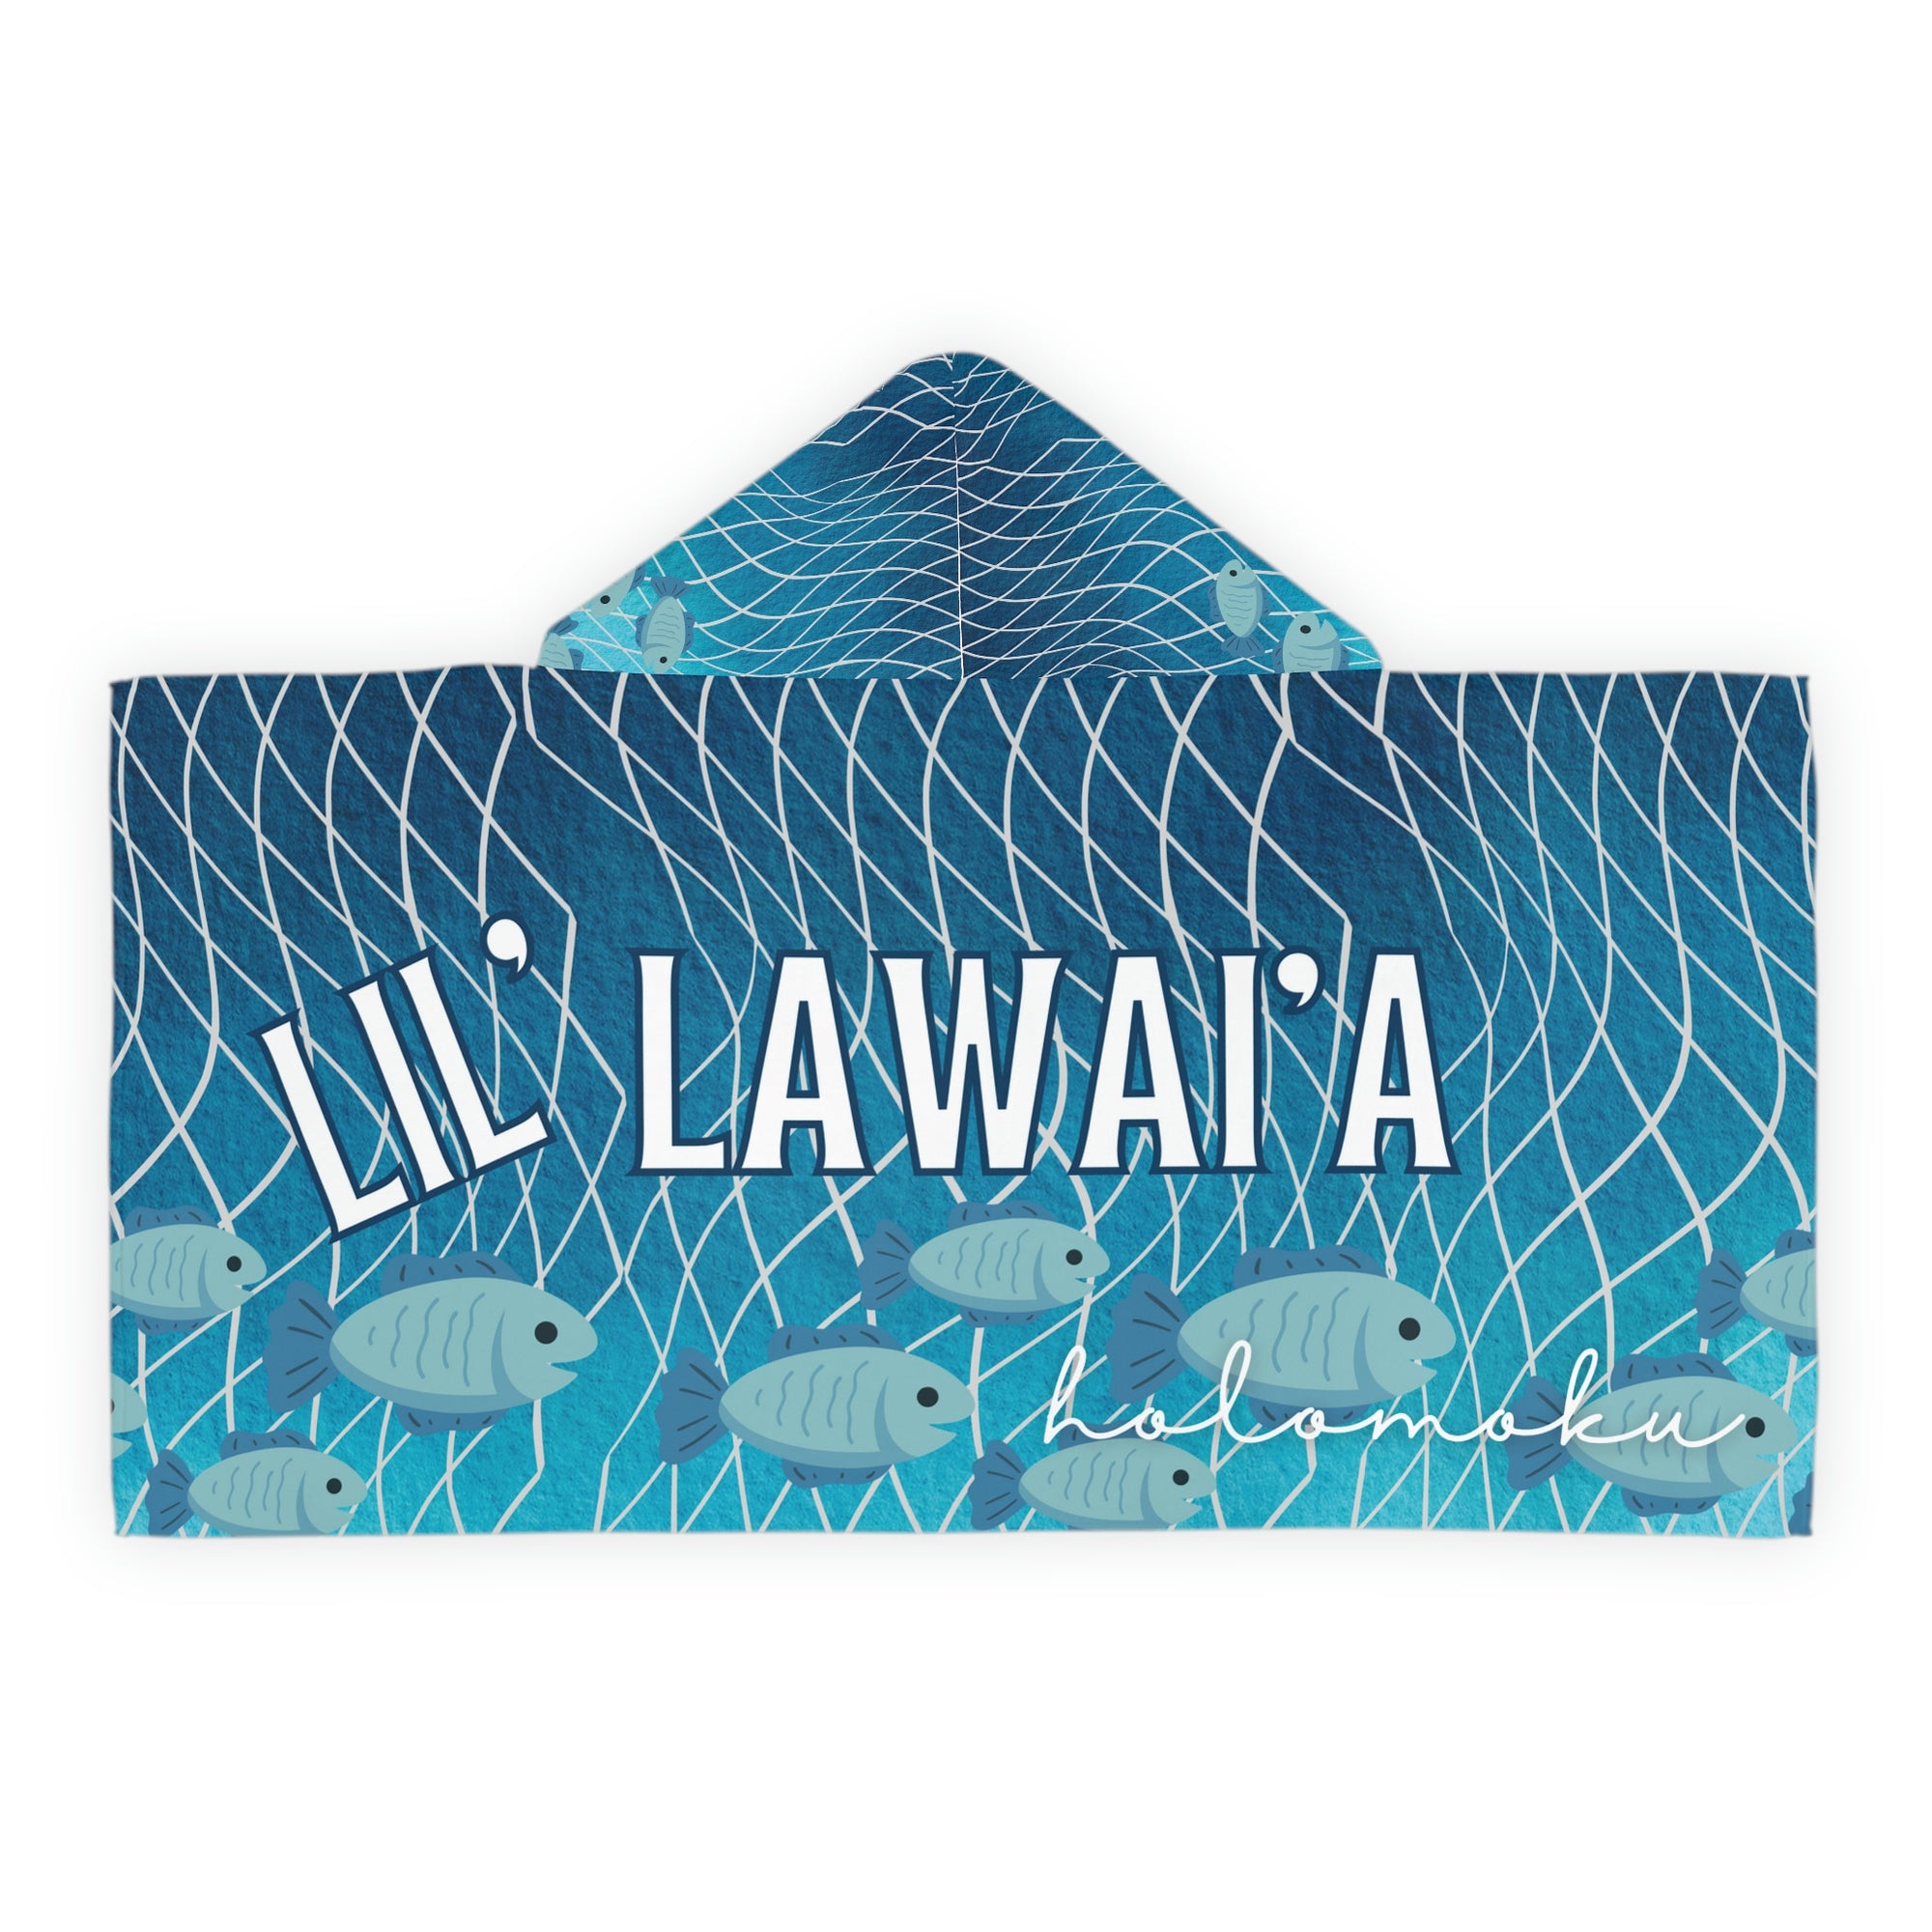 Lil lawai’a hooded towel